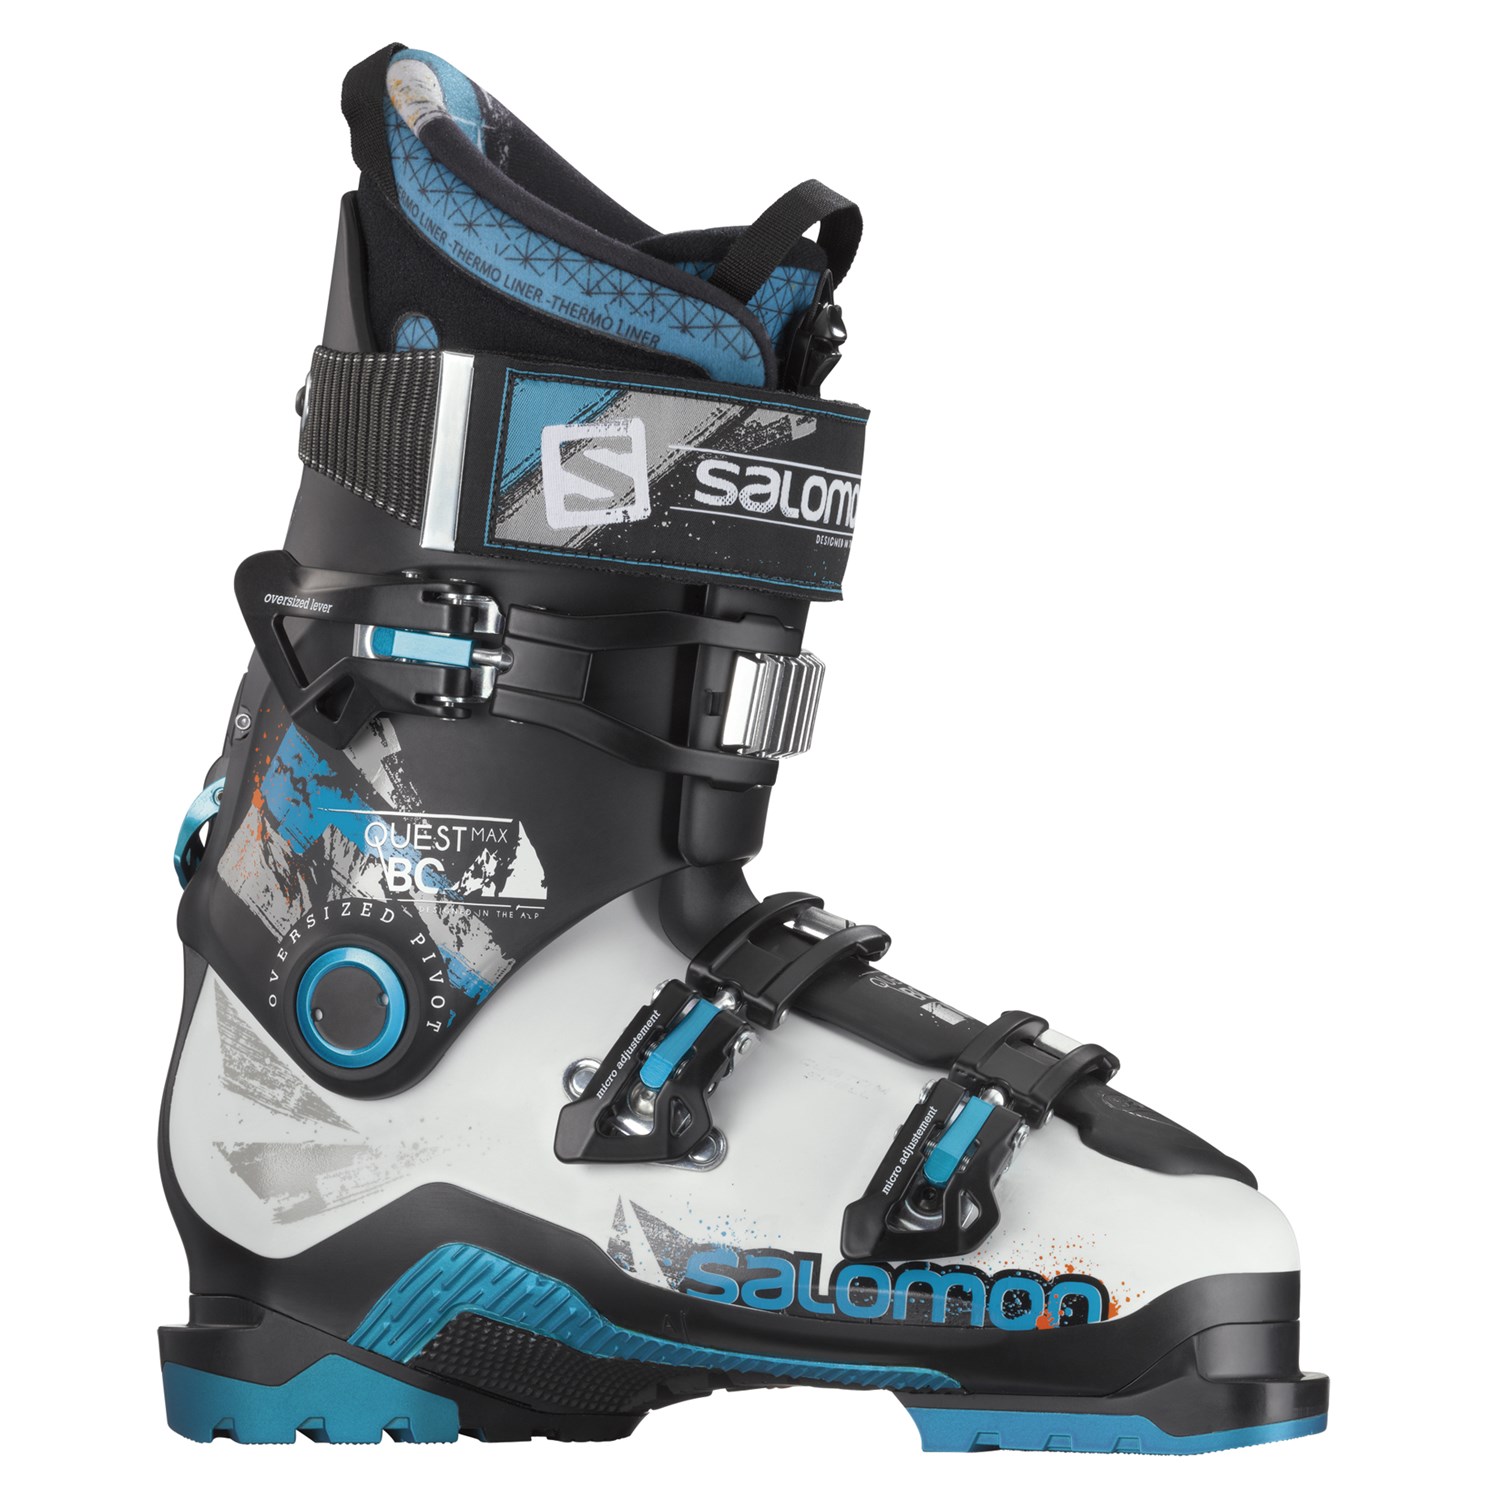 Undvigende overtro brud Salomon Quest Max BC 120 Ski Boots 2014 | evo